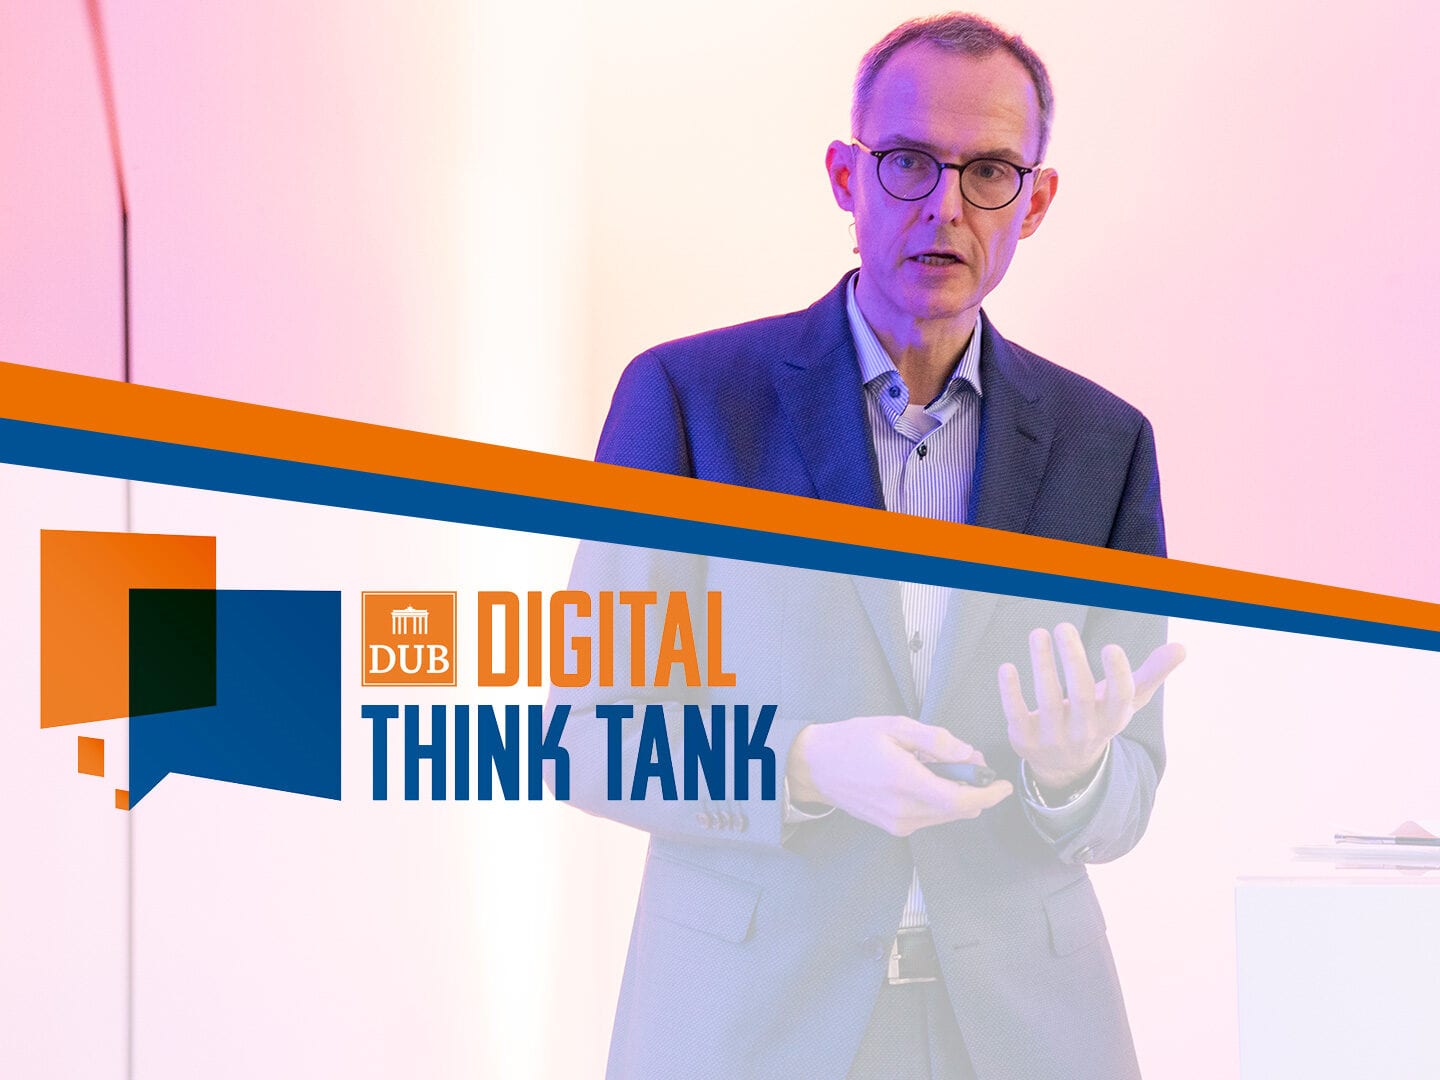 Alexander Britz von Microsoft auf der Bühne beim DUB Digital Think Tank